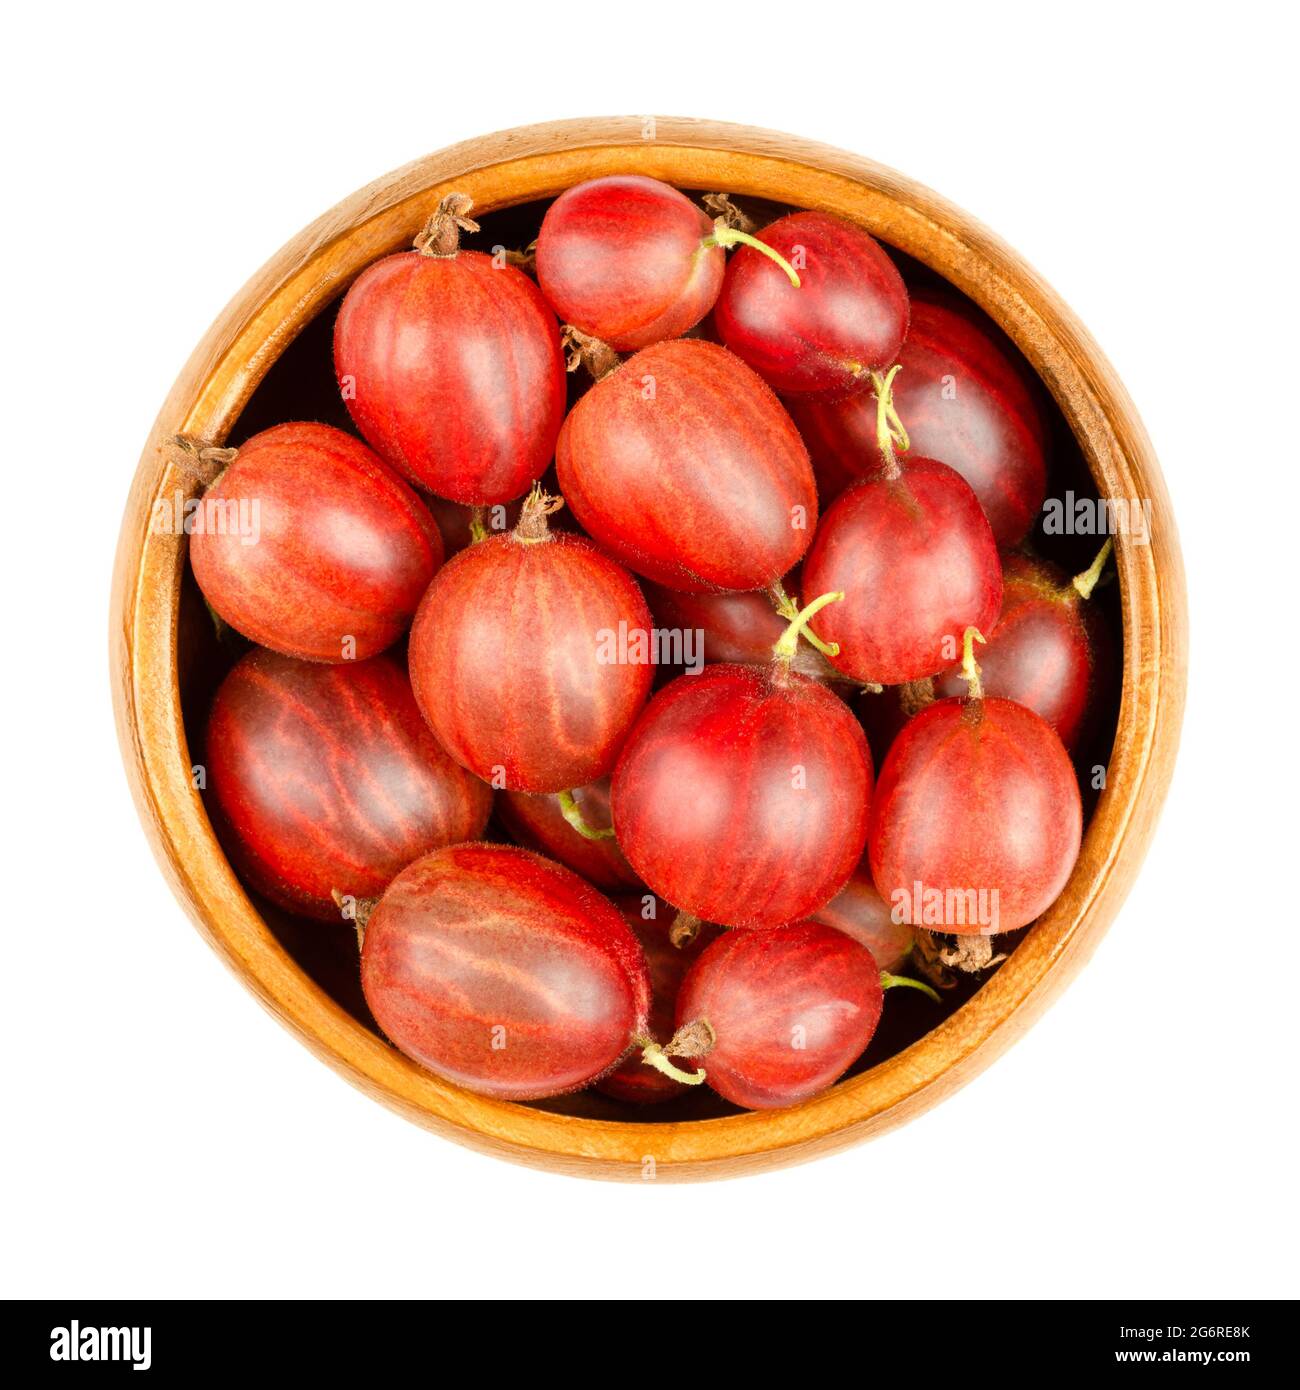 Frutti di bosco rossi in una ciotola di legno. Bacche fresche e mature, frutti di Ribes uva-crisspa, anche noto come uva spina europea, dal sapore dolce. Foto Stock